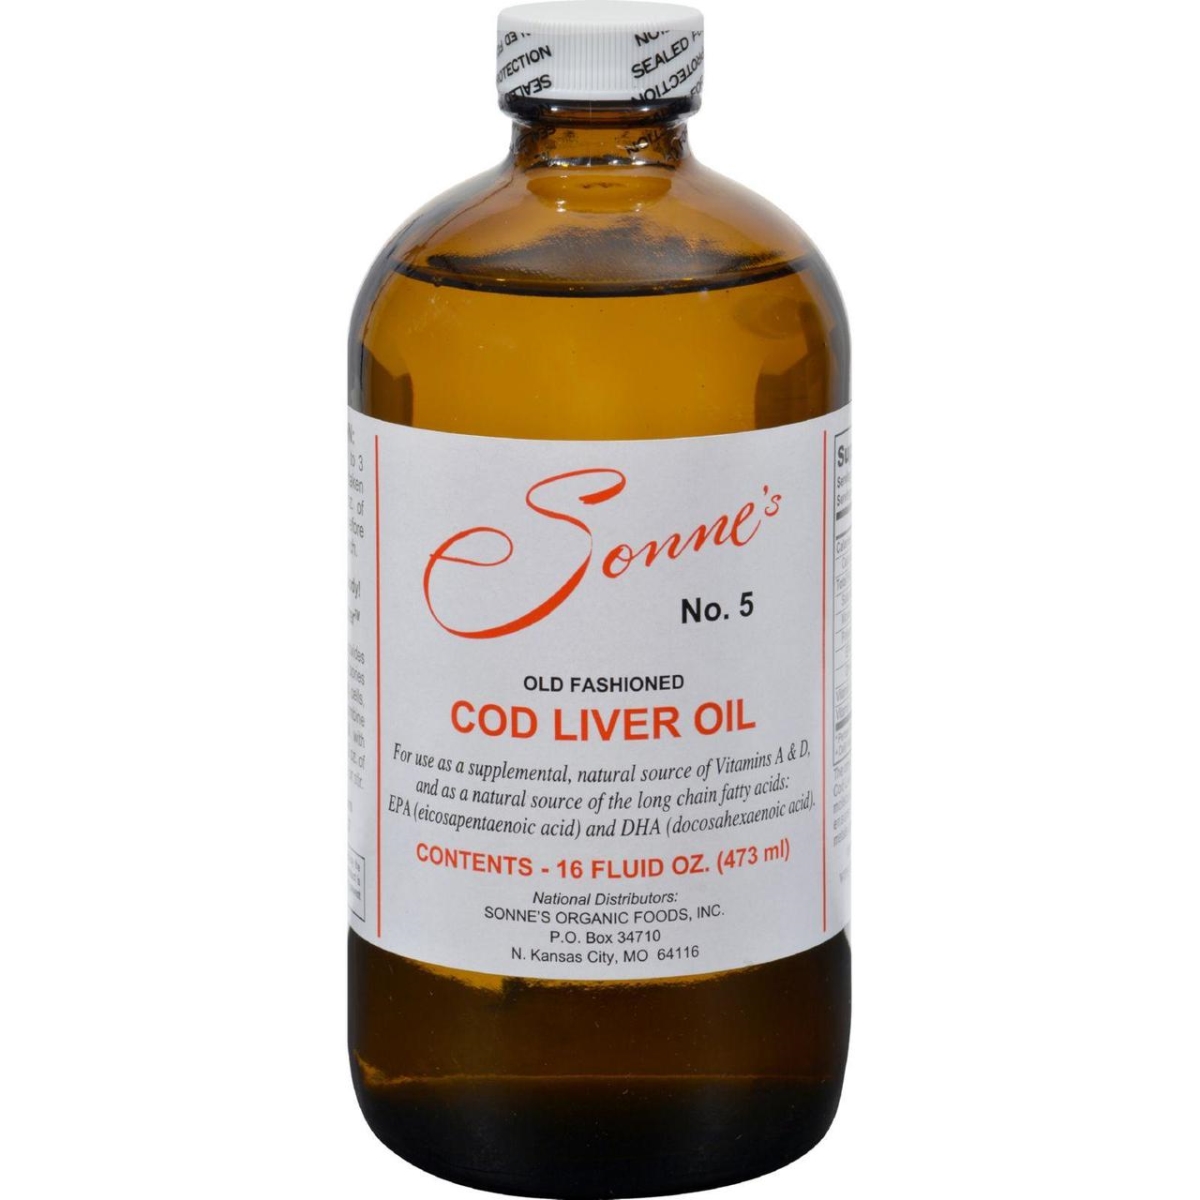 Hg0352138 16 Fl Oz No. 5 Old Fashioned Cod Liver Oil